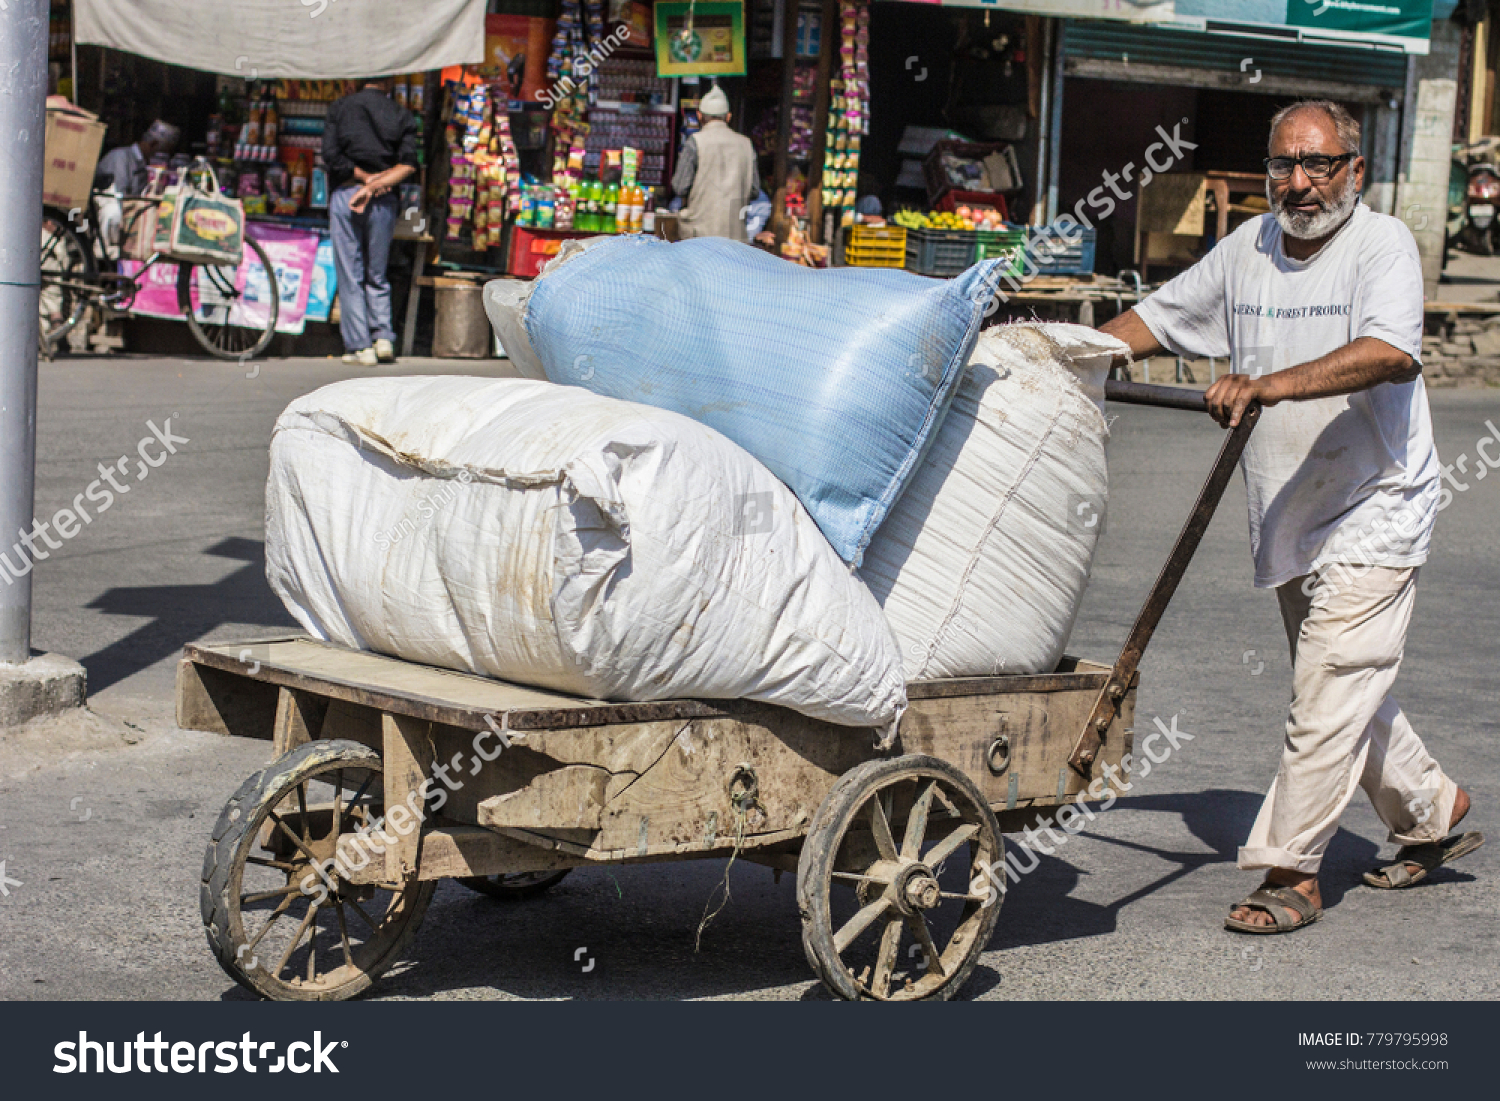 stock-photo-kashmir-october-old-town-in-srinagar-kashmir-indian-man-at-work-pushing-cart-to-the-779795998.jpg